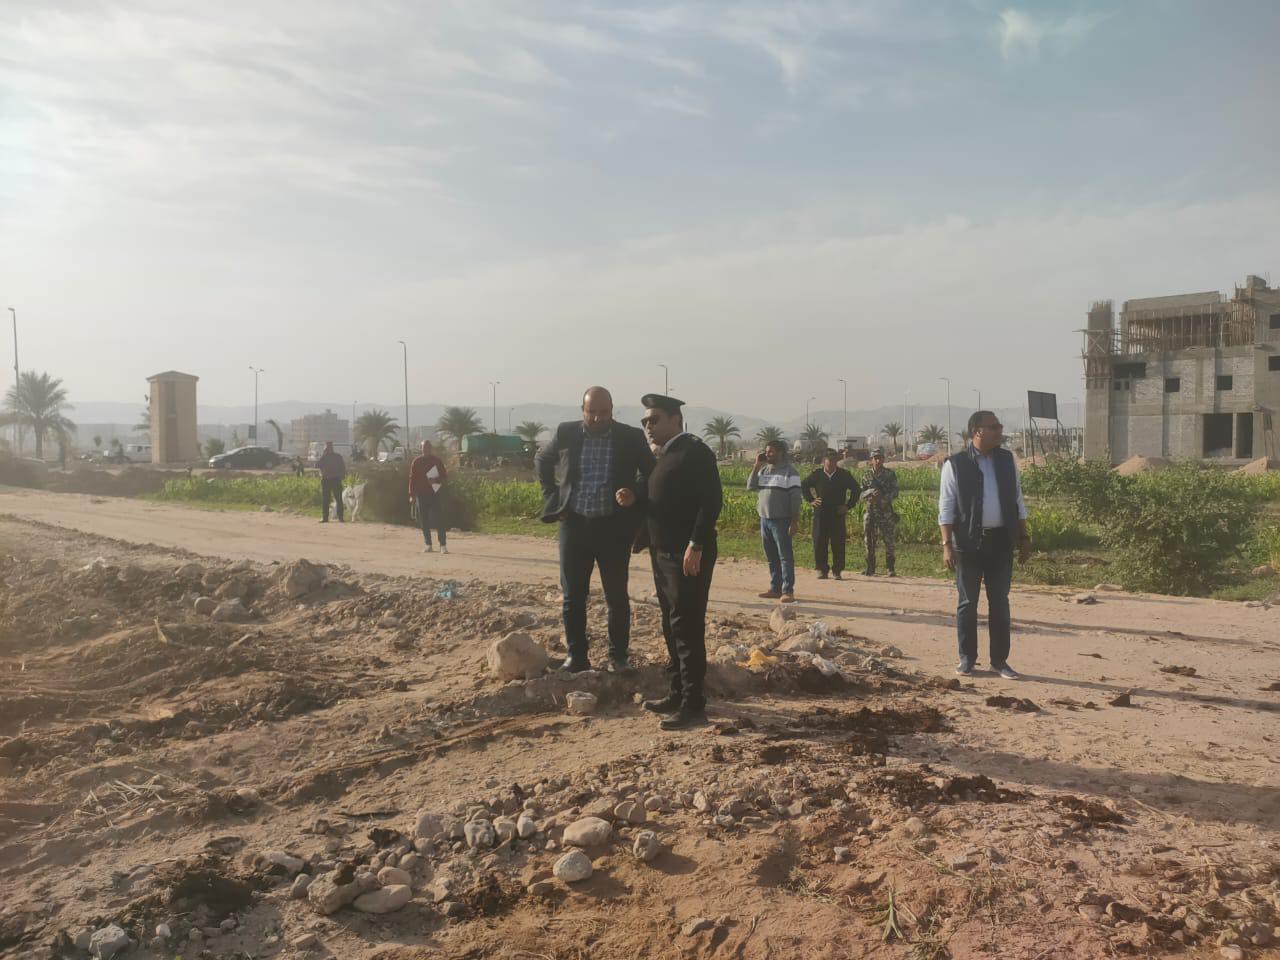 إزالة تعديات عن قطع أراضٍ بمدينة سوهاج الجديدة في حملات مكبرة